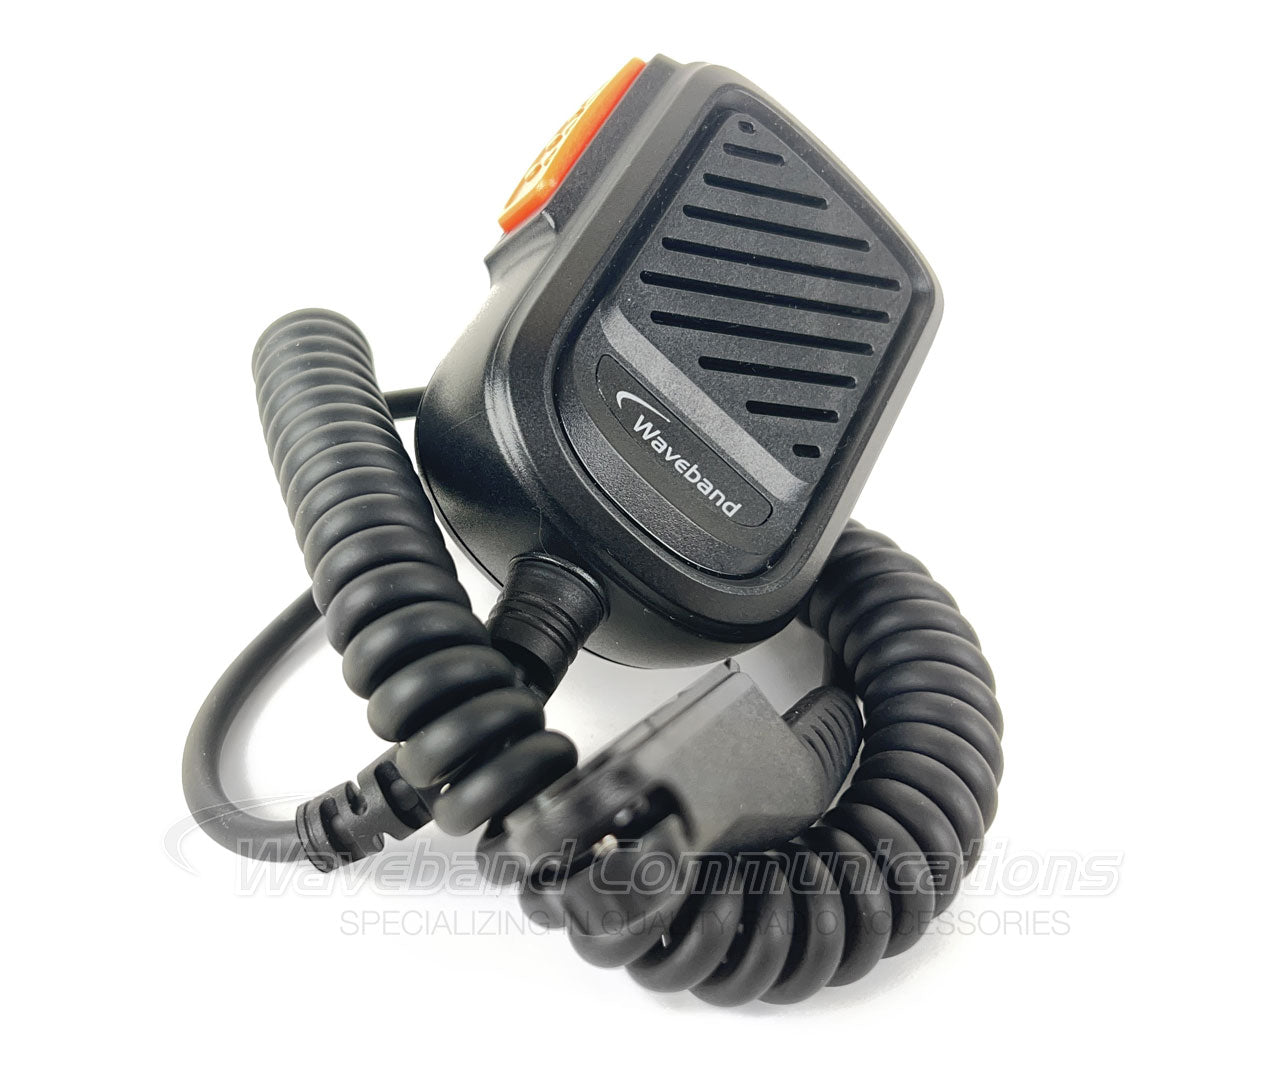 Motorola PMMN4140 Microphone de haut-parleur robuste compatible pour une utilisation avec des radios portables de la série Motorola R7